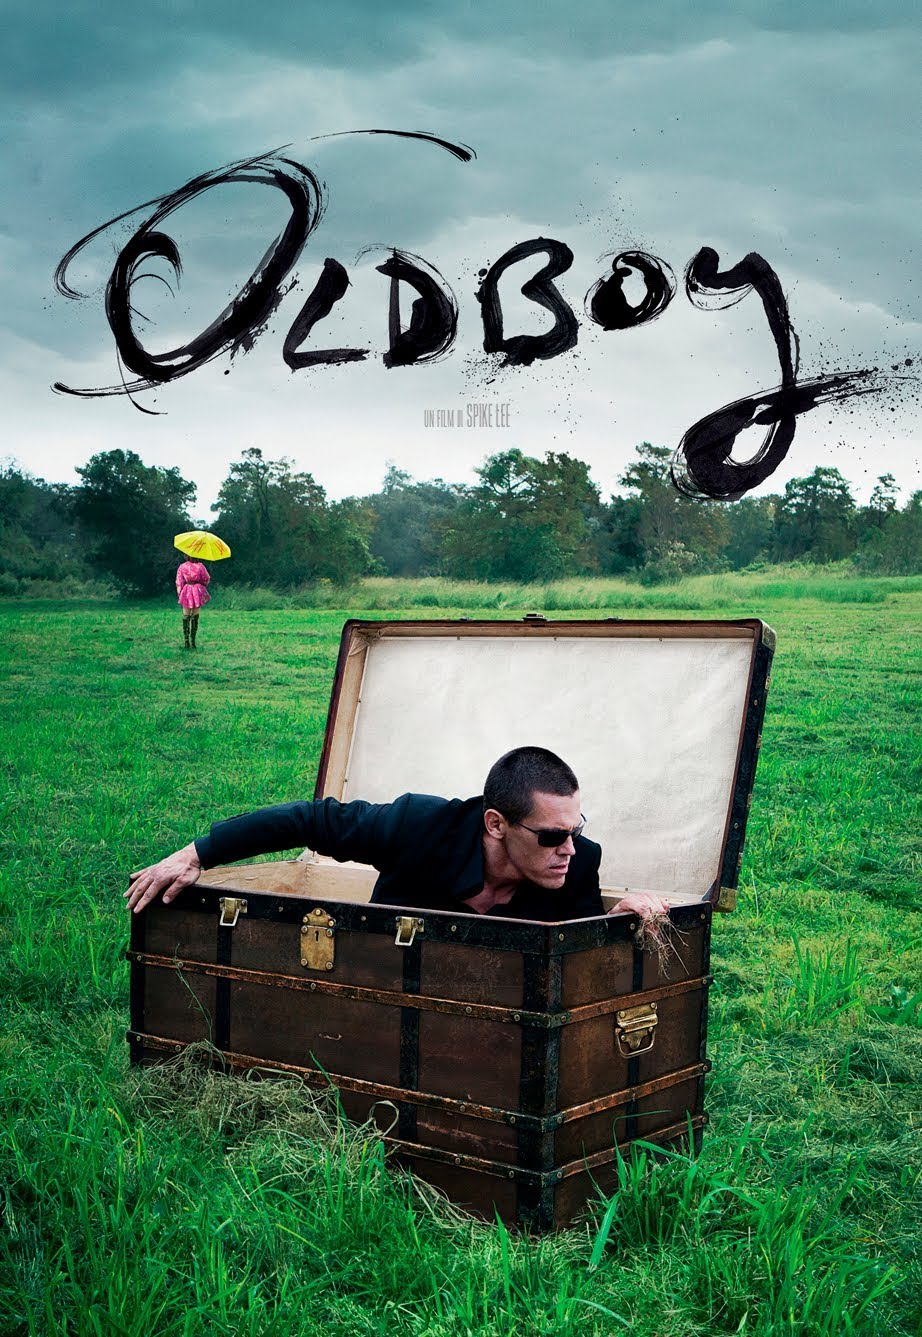 Oldboy [HD] (2013)